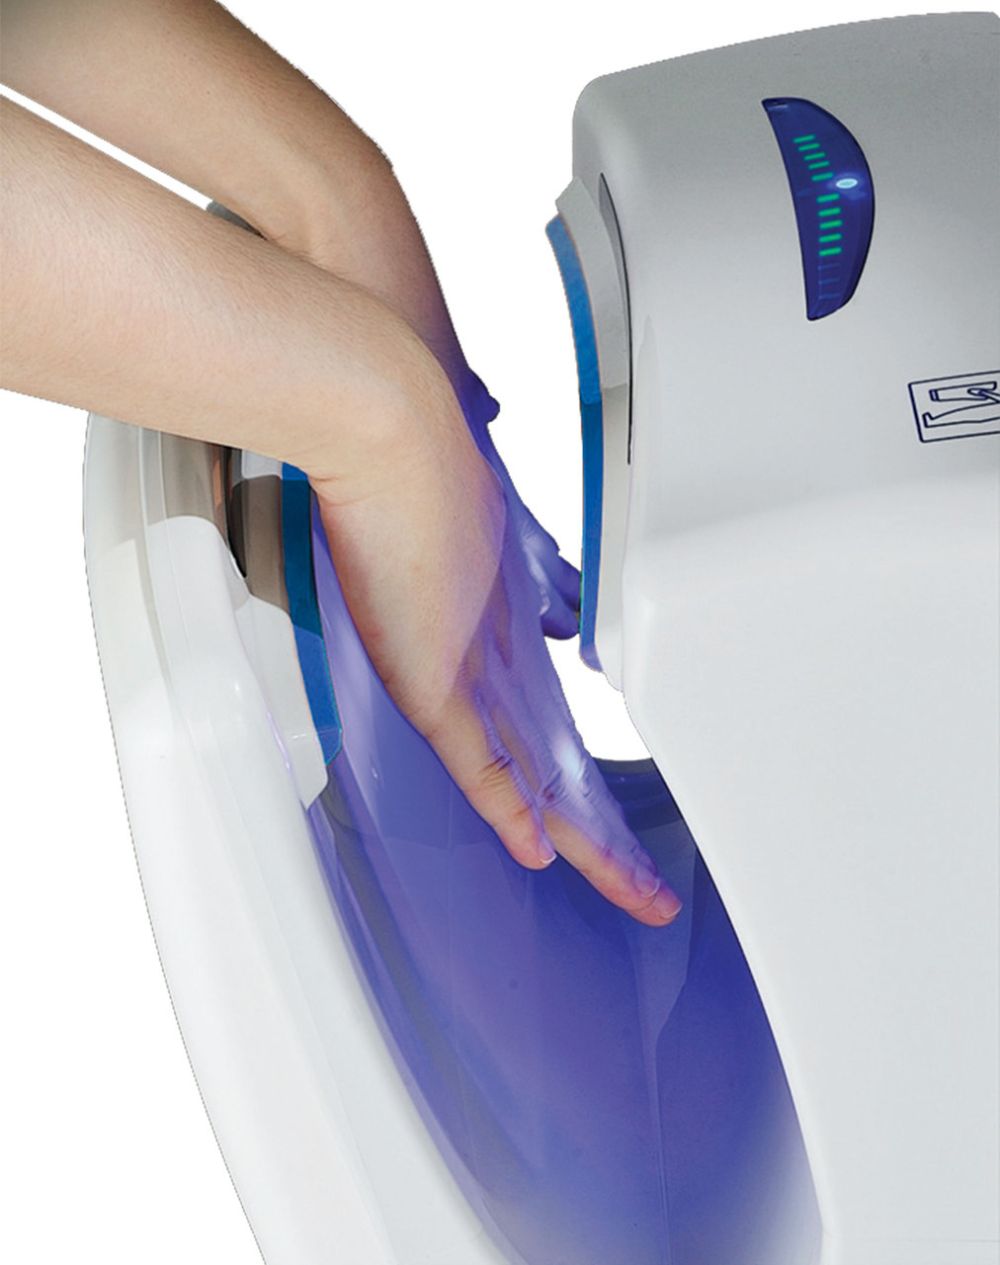 Biodrier Business 2 hand dryer